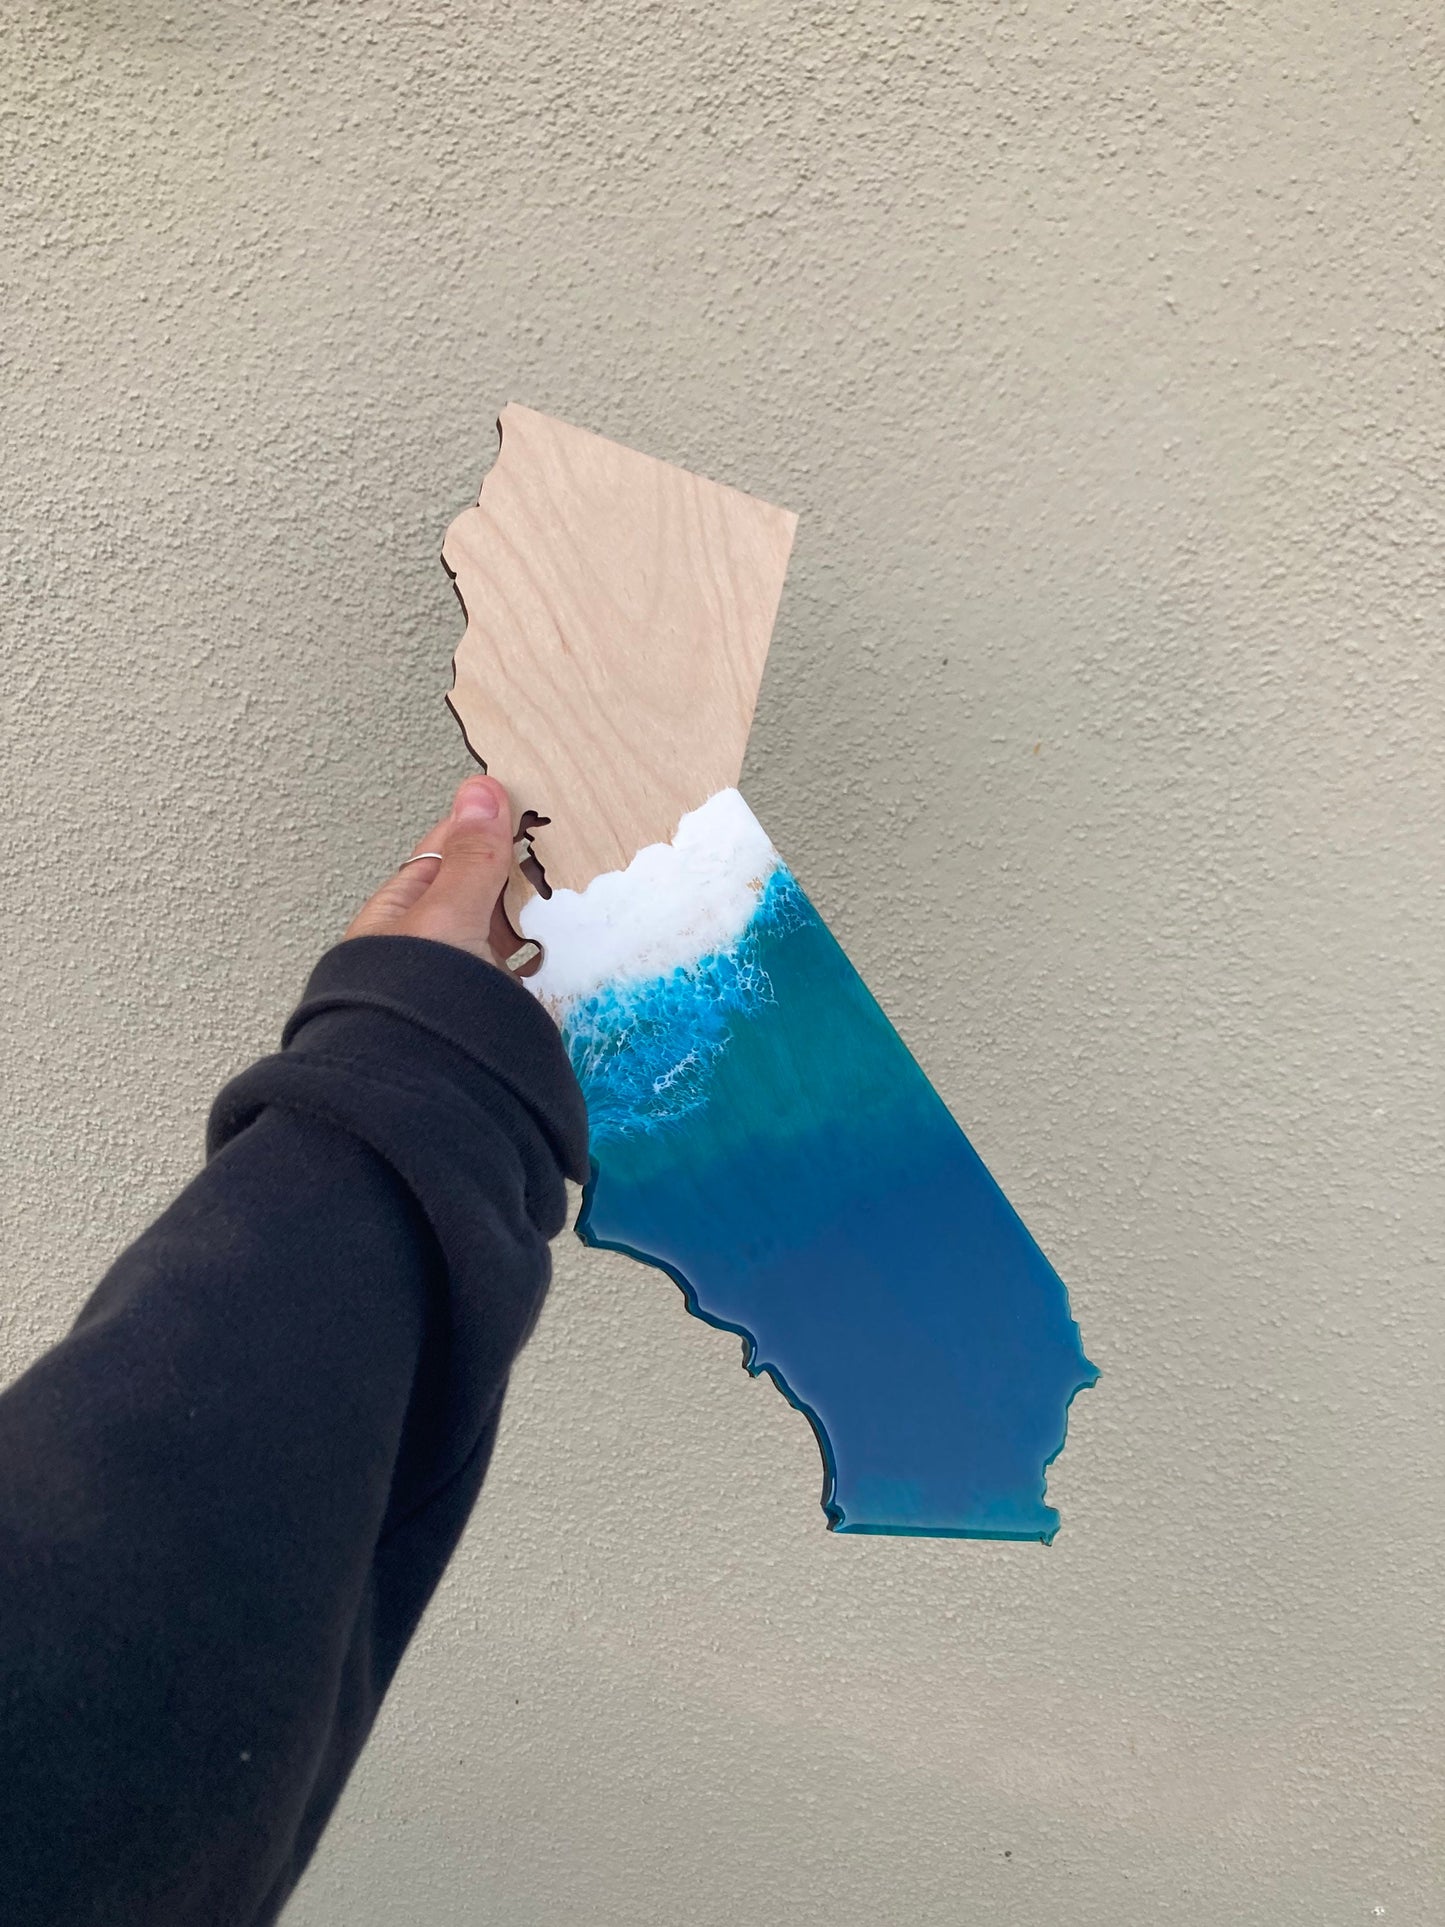 Ocean California wall art